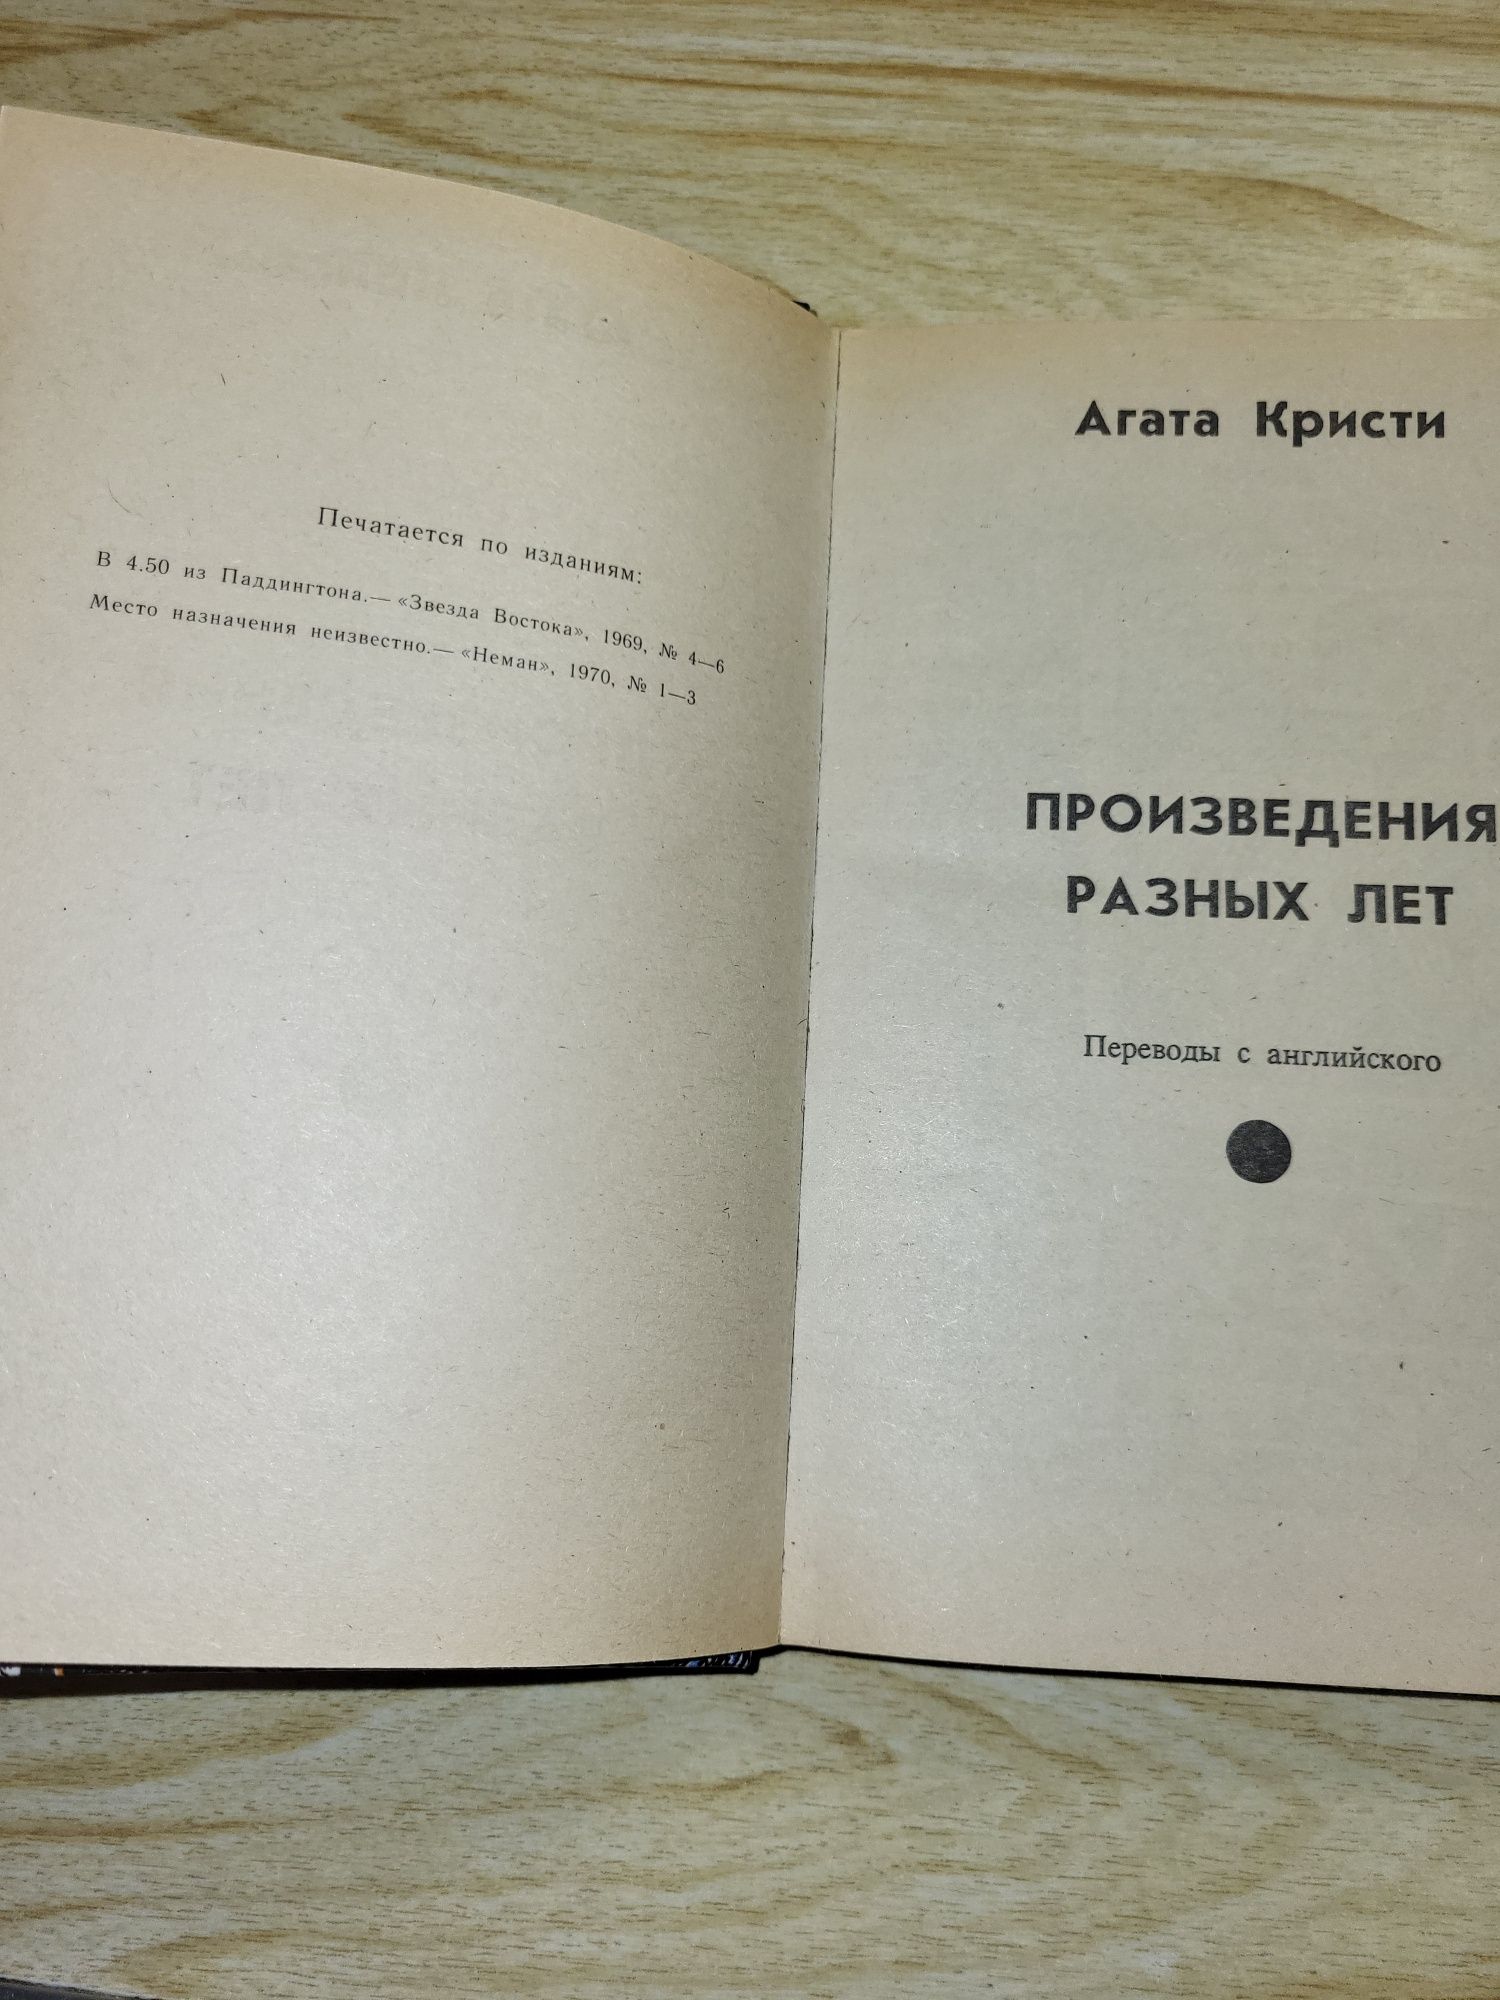 Агата Кристи "Произведения разных лет", 6 томов . Романы, повести.